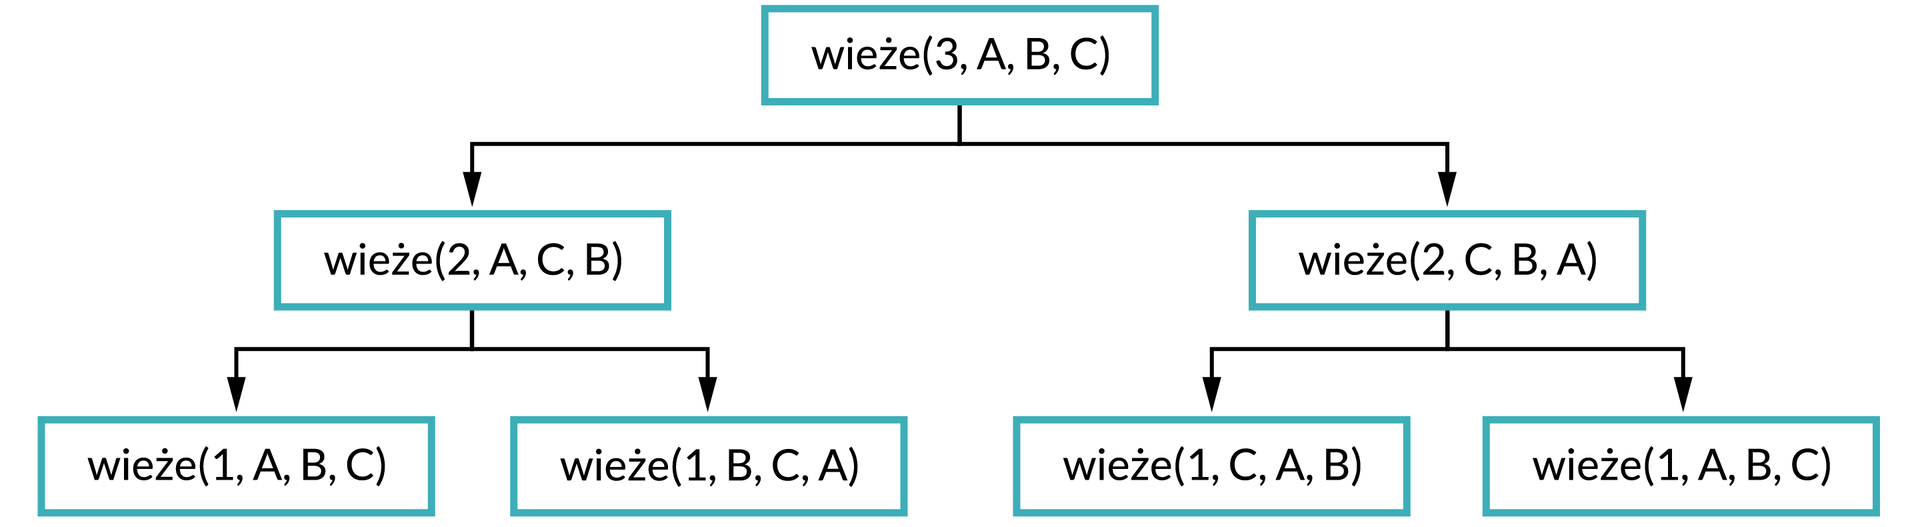 Ilustracja przedstawia schemat. Na górze schematu w prostokątnej ramce jest napis: wieże(3, A, B, C). Od ramki dwie strzałki w dół, pod strzałką po lewej stronie zapis w ramce: wieże(2, A, C, B). Od ramki dwie strzałki w dół, pod strzałką po lewej stronie zapis w ramce: wieże(1, A, B, C), pod strzałką po prawej stronie wieże(1, B, C, A). Pod strzałką po prawej stronie od pierwszego zapisu napis: wieże(2, C, B, A). Od ramki dwie strzałki w dół. Pod strzałką po lewej stronie zapis: wieże(1, C, A, B), pod strzałką po prawej stronie zapis: wieże(1, A, B, C). 